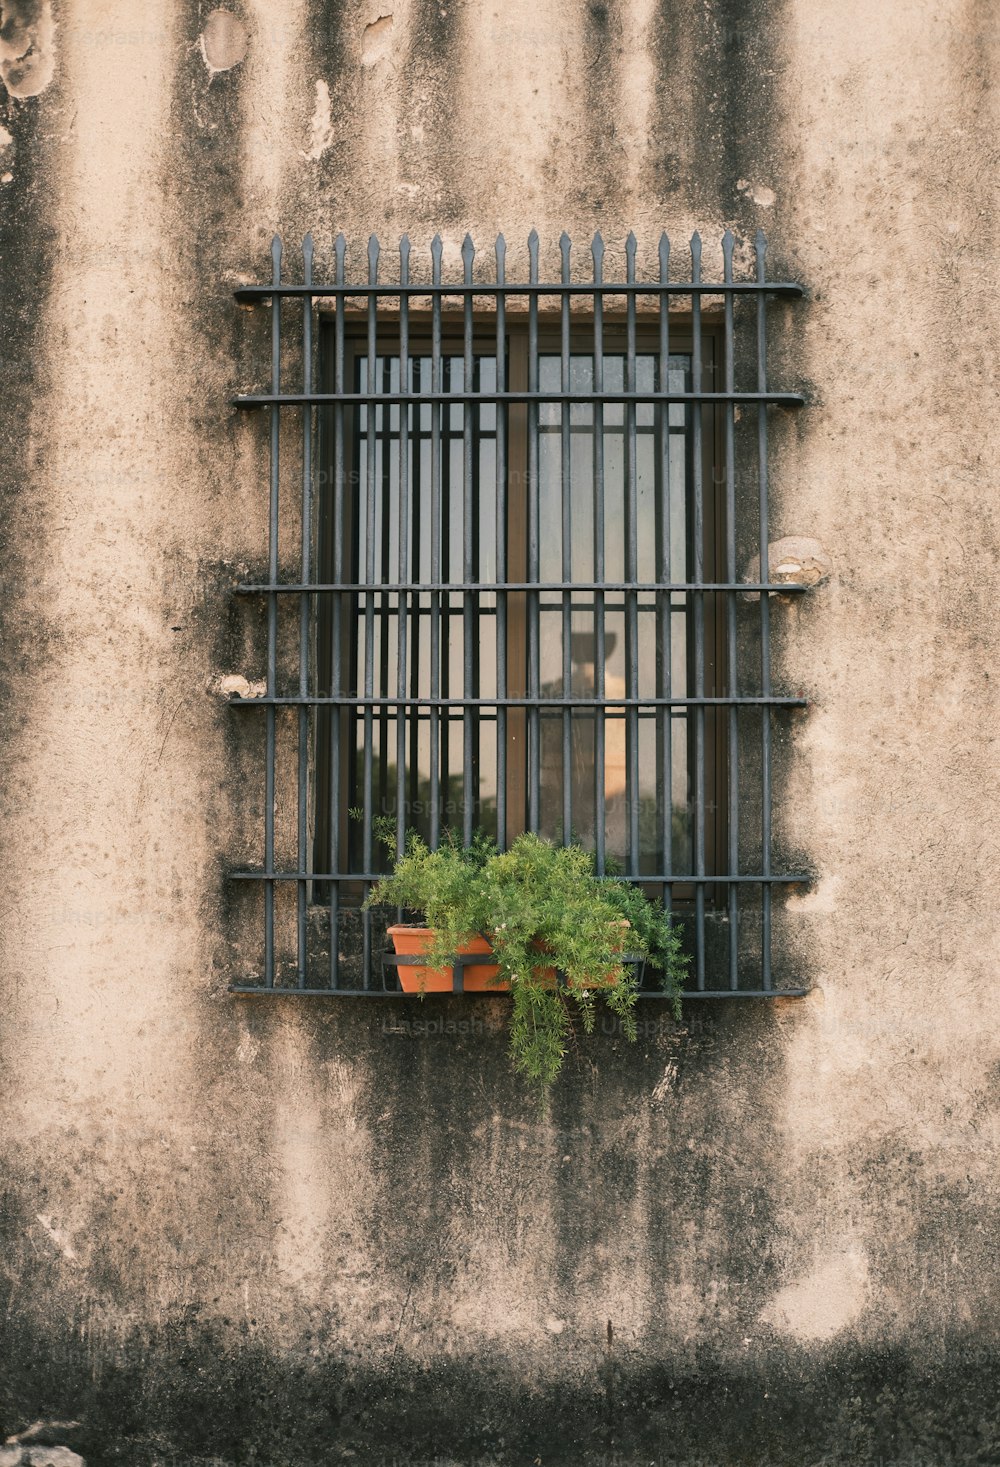 una ventana con rejas y una planta en maceta